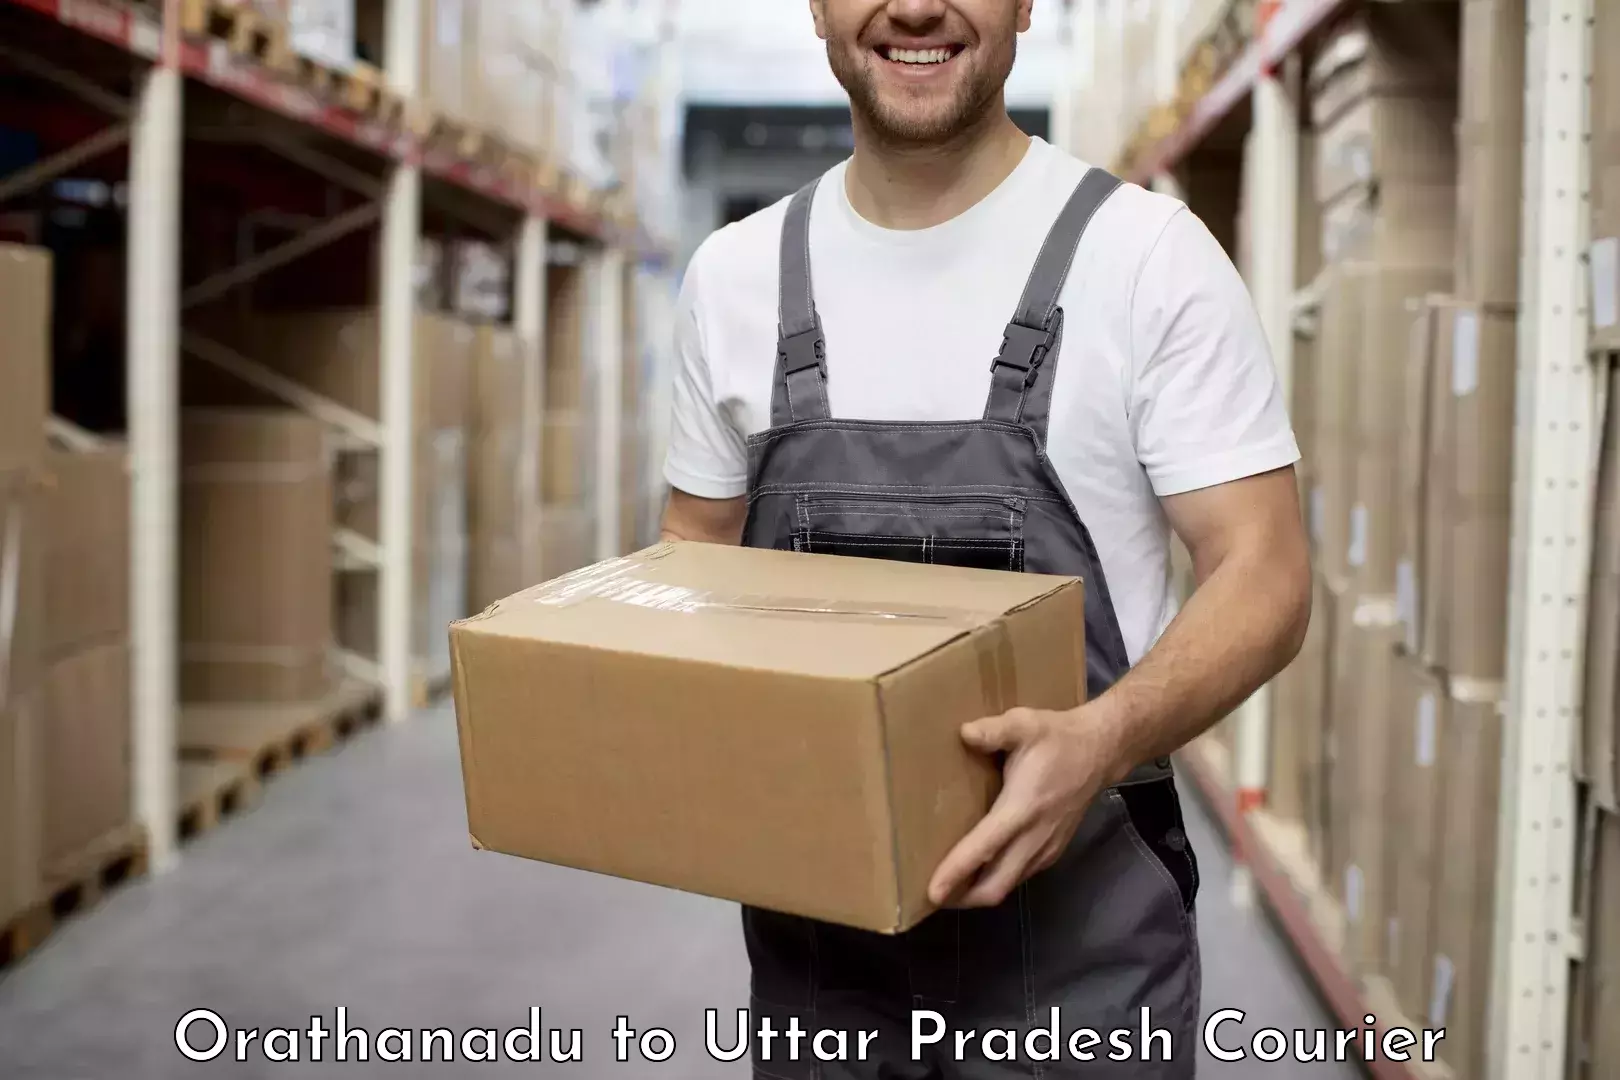 Smart shipping technology Orathanadu to Sirathu